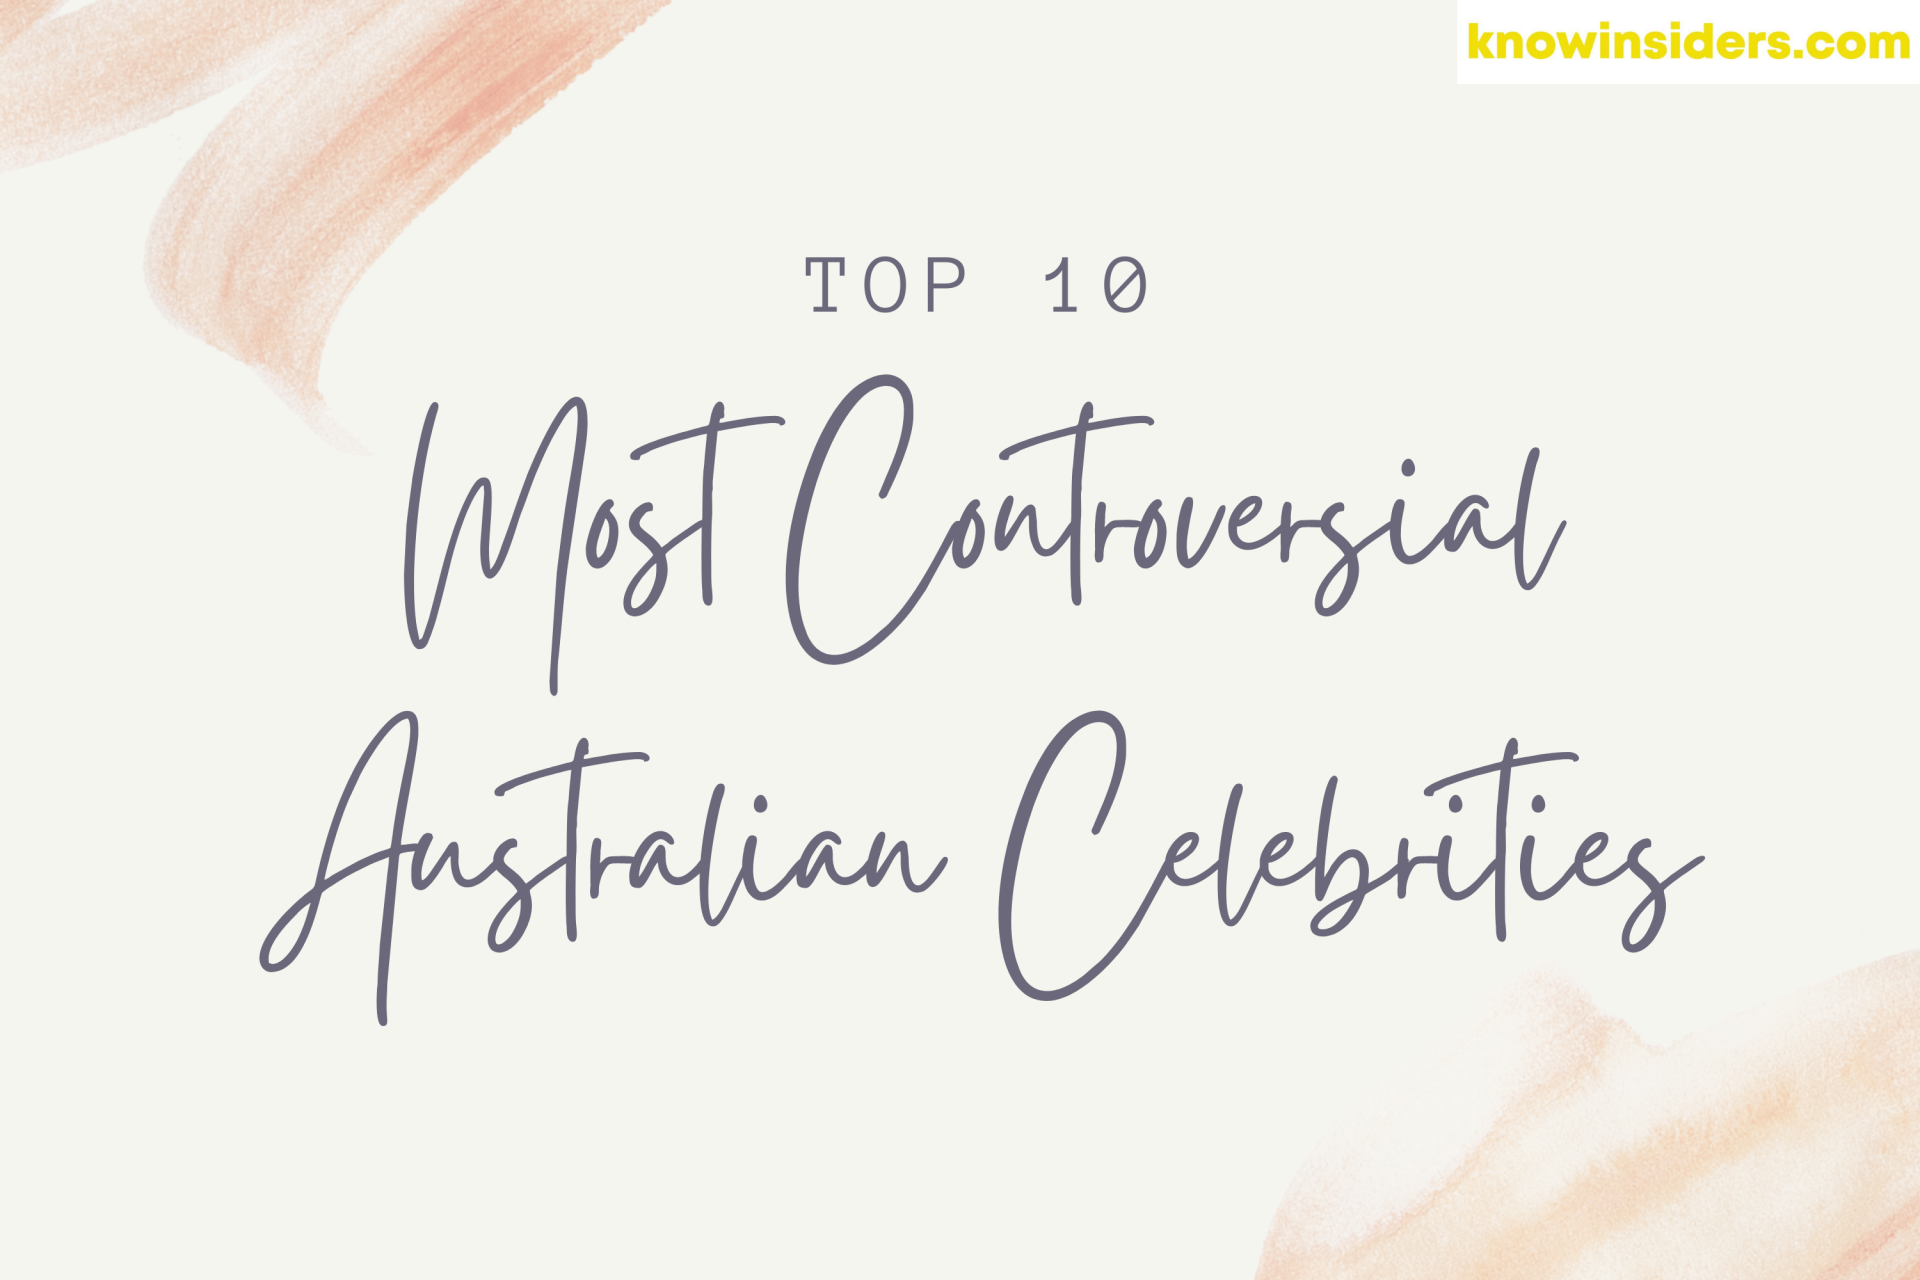 Top 10 Most Controversial Australian Celebrities